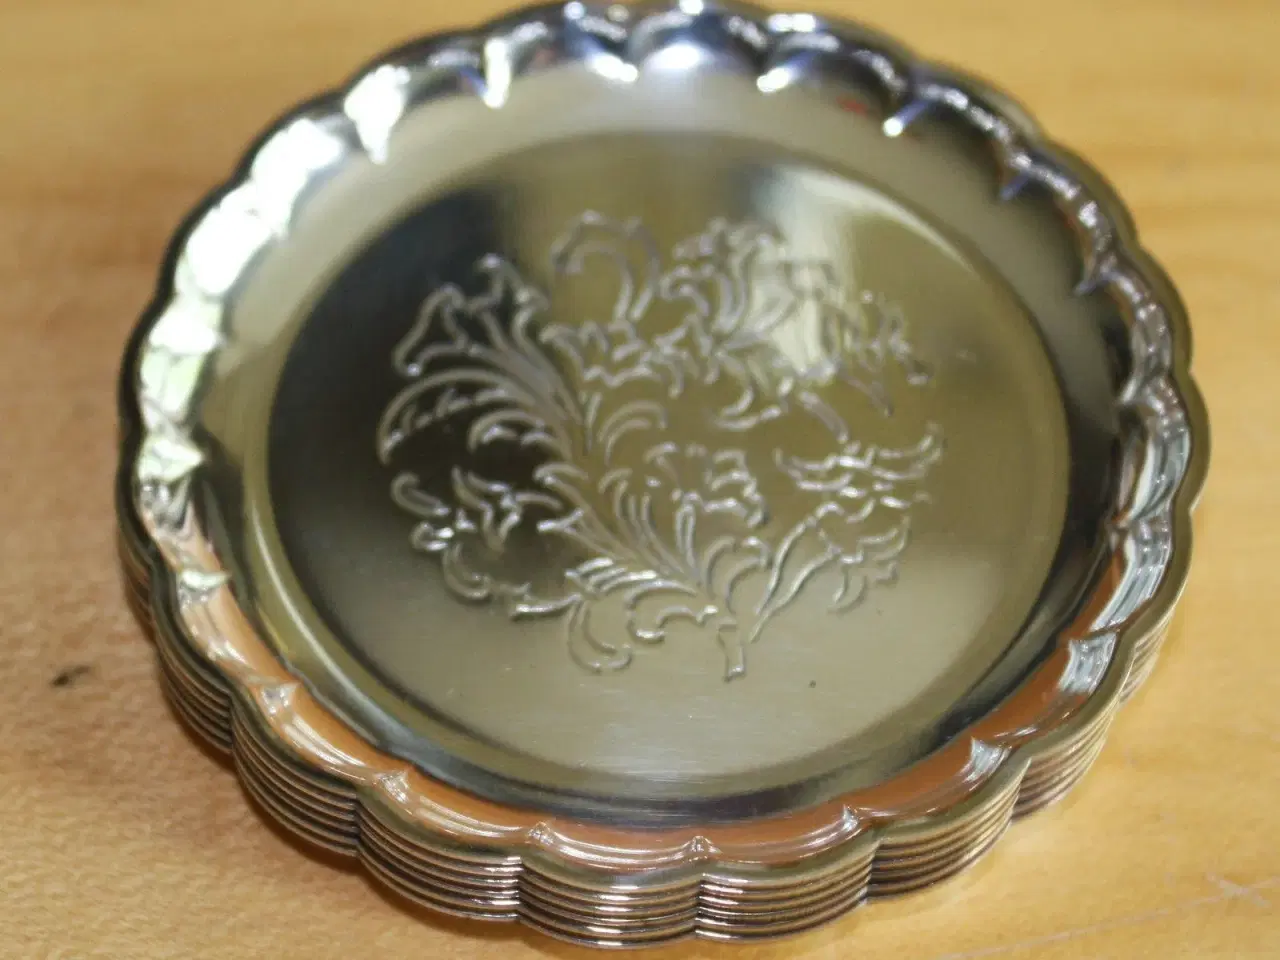 Billede 2 - 6 glaskebakker af sølvplet